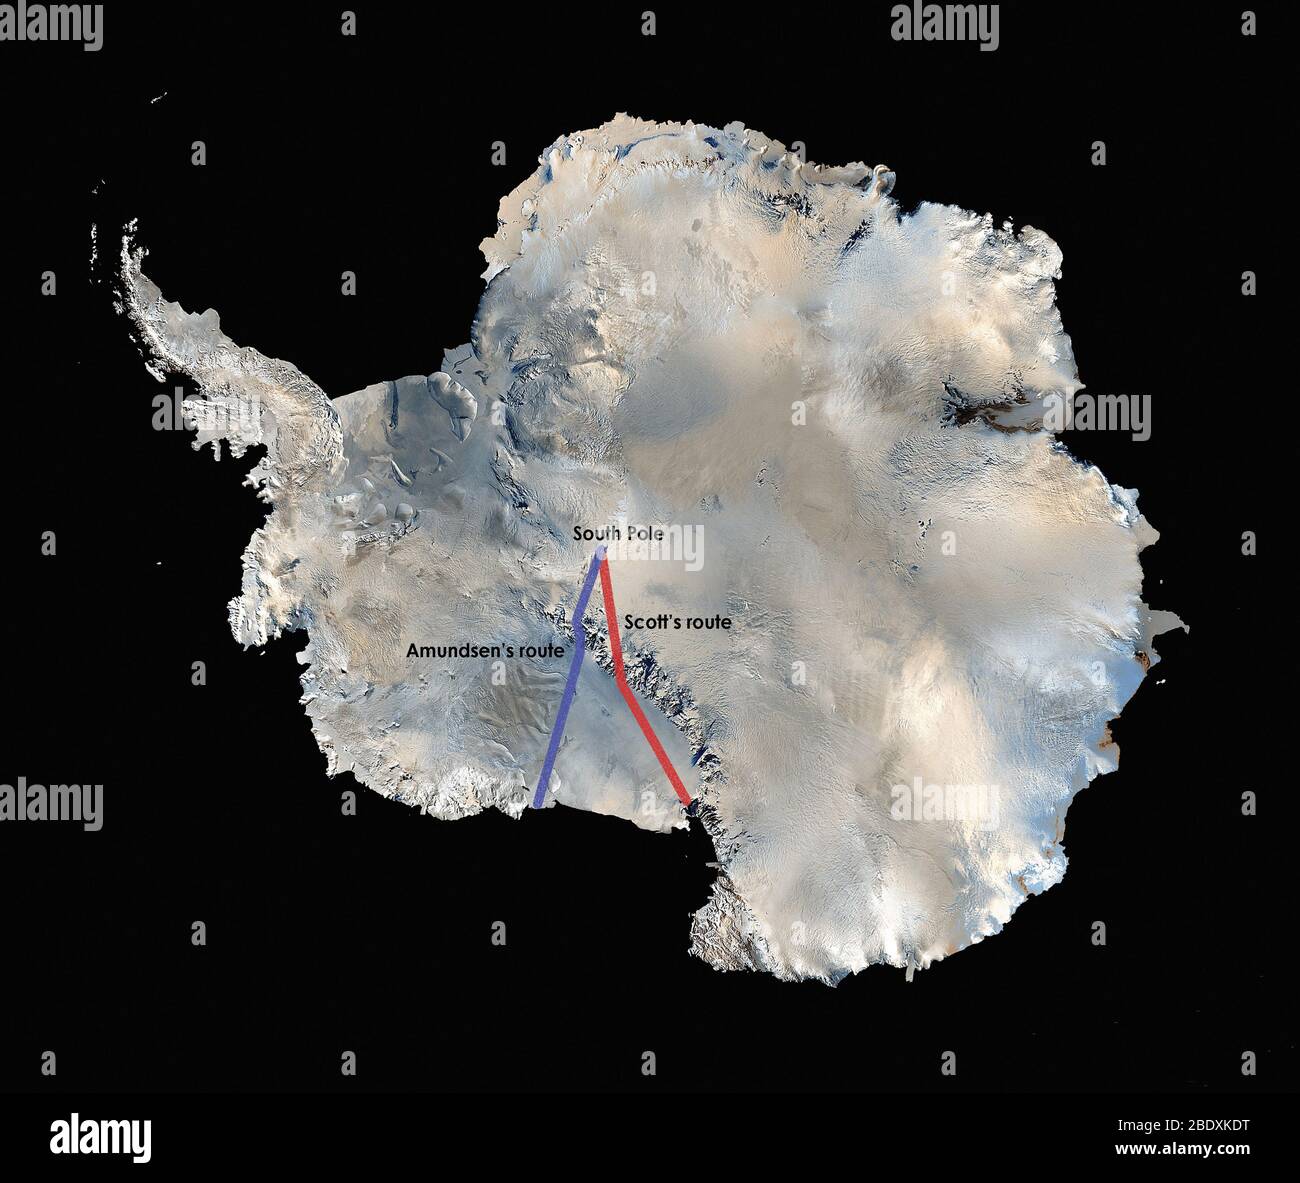 Die weltweit erste hochauflösende, dreidimensionale, farbgetreue Karte der Antarktis wurde aus mehr als 1,100 Bildern des Landsat 7-Satelliten erstellt. Um das Landsat-Bildmosaik der Antarktis (LIMA) zu erstellen, kombinierten wissenschaftliche Visualisierer Landsat 7 Szenen (aufgenommen zwischen 1999 und 2001), ein digitales Höhenmodell und Felddatenmessungen. Es dauerte Jahre, bis das ganze zusammengebracht wurde, um es 2007 zu veröffentlichen. Die NASA arbeitete mit der USGS, der National Science Foundation und dem British Antarctic Survey zusammen, um die Karte des höchsten, trockensten, kältesten, windigsten und hellsten Meeresbeckens der Erde zu erstellen Stockfoto